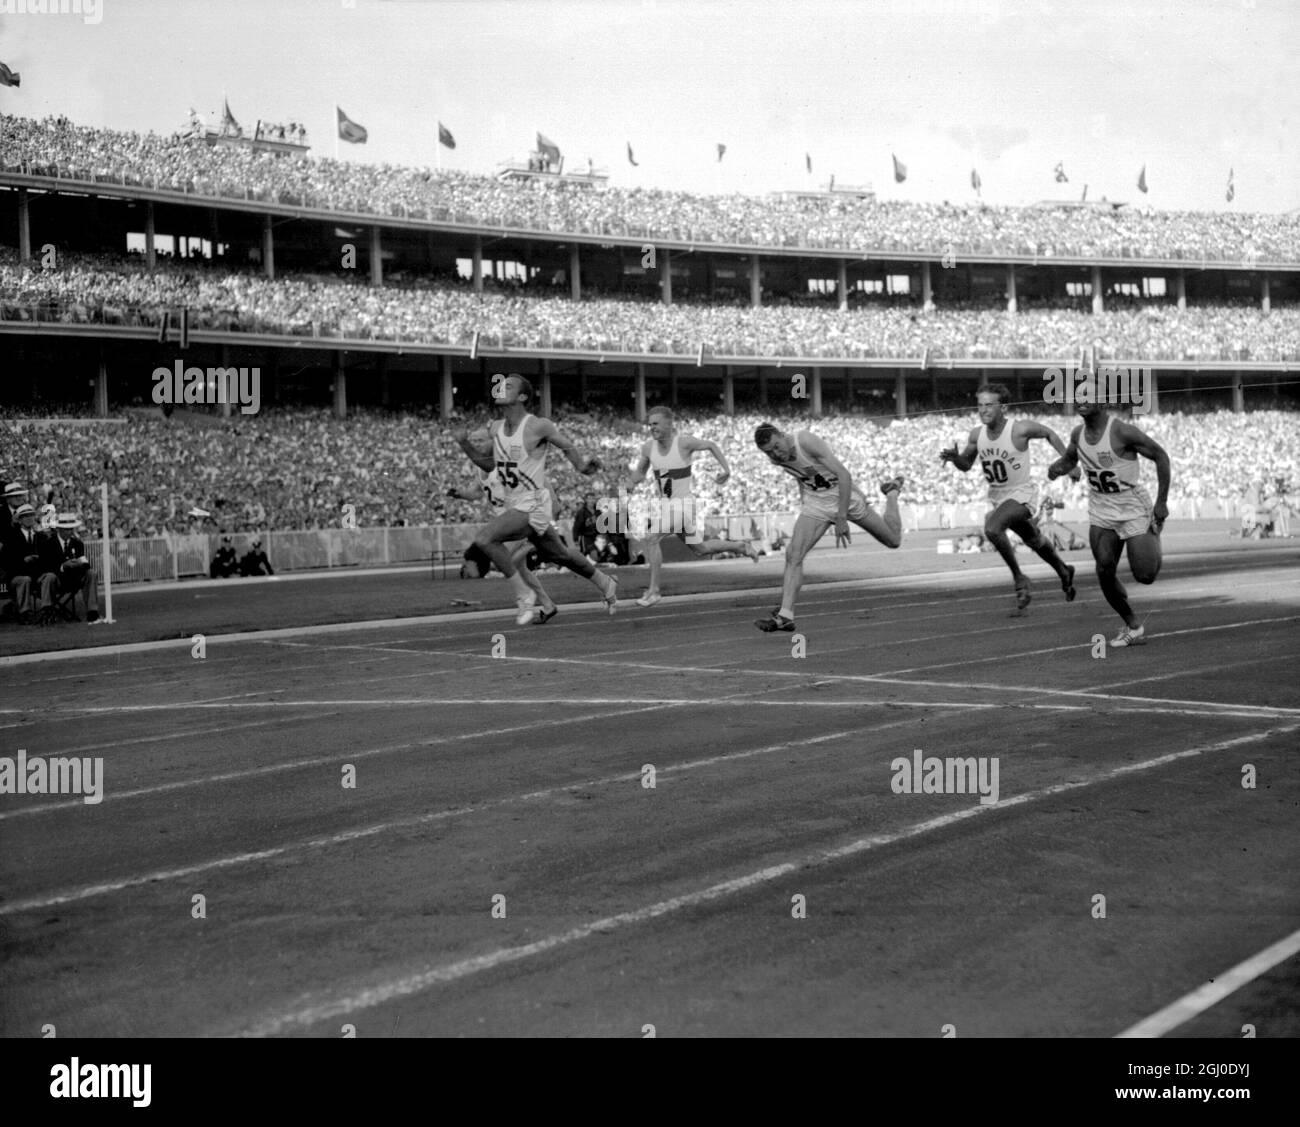 Jeux Olympiques de Melbourne 1956 Robert Morrow (55) des États-Unis brise la bande pour gagner la finale de 100m en un temps de 10,5 secondes. Le deuxième était Walter Baker (54) également des États-Unis et le troisième était Hector Hogan (2) d'Australie. Sont également photographiés Ira Murchison (56) des États-Unis, Manfred Gemar (14) d'Allemagne et Michael Agostini (50) de Trinidad. 28 novembre 1956 Banque D'Images